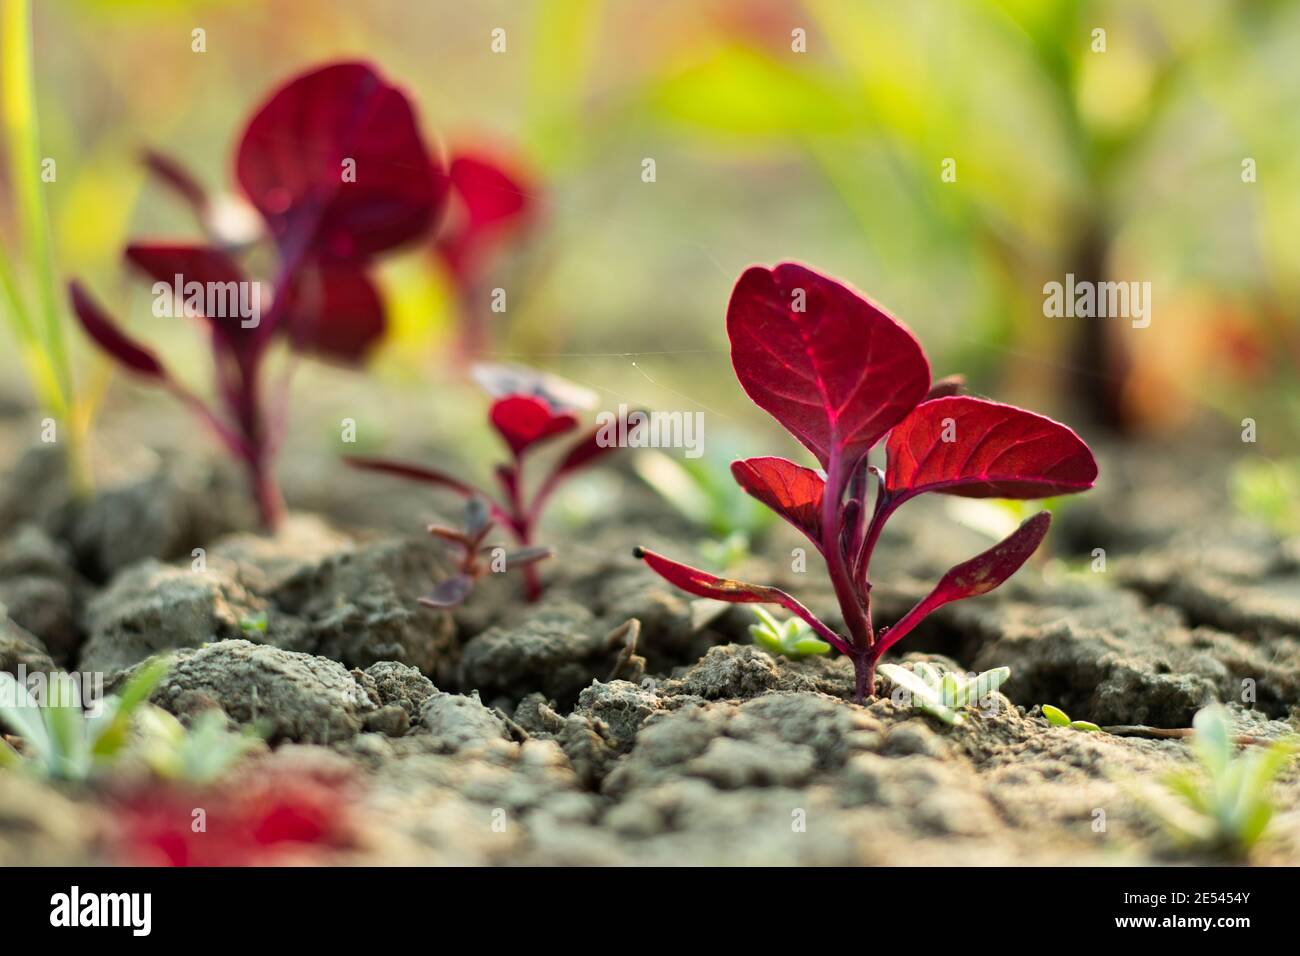 Hojas de color rojizo profundo también llamadas hojas rojas o espinacas o velocidades superlentas Foto de stock